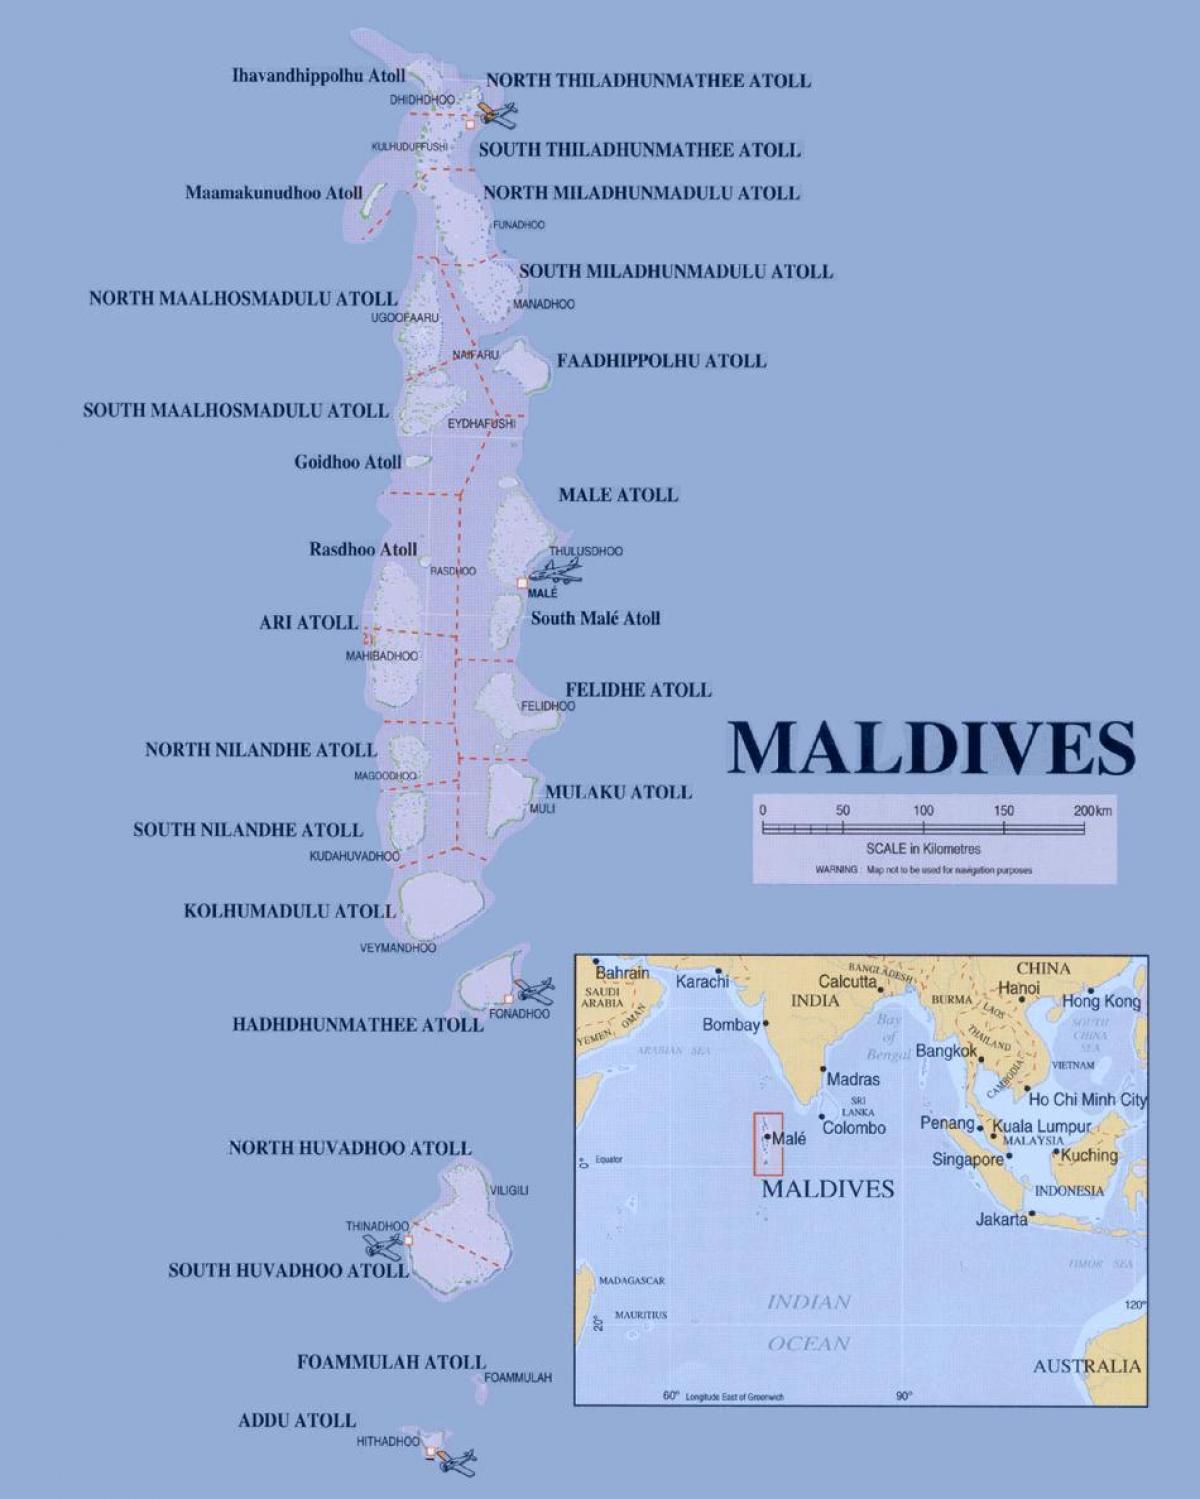 خريطة تبين المالديف